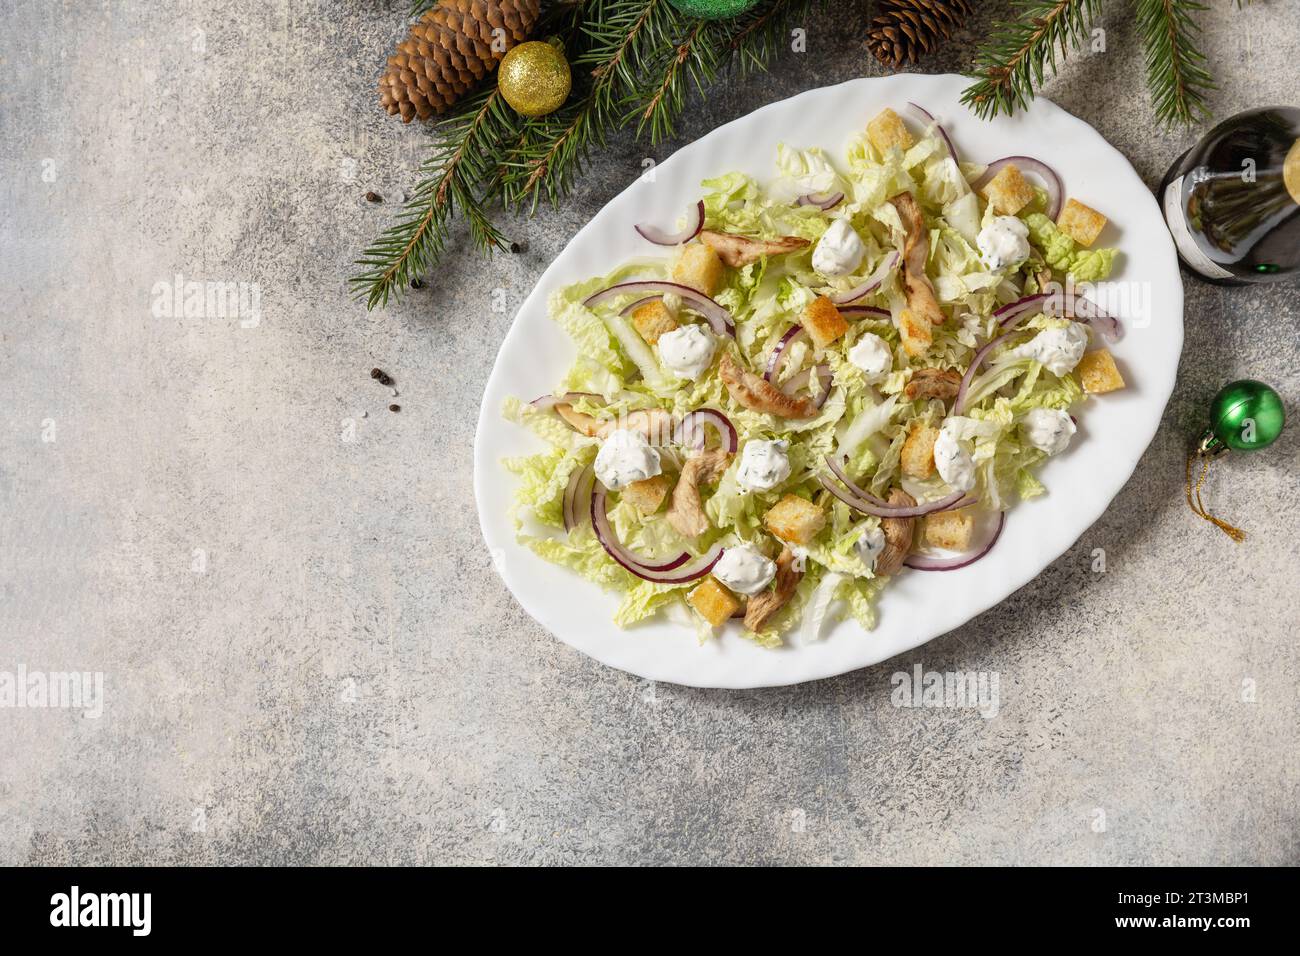 Vorspeise zu Weihnachten. Weihnachts-Neujahrssalat chinakohl, Fetakäse, Huhn und Croutons auf dem festlichen Tisch. Blick von oben. Kopierbereich. Stockfoto